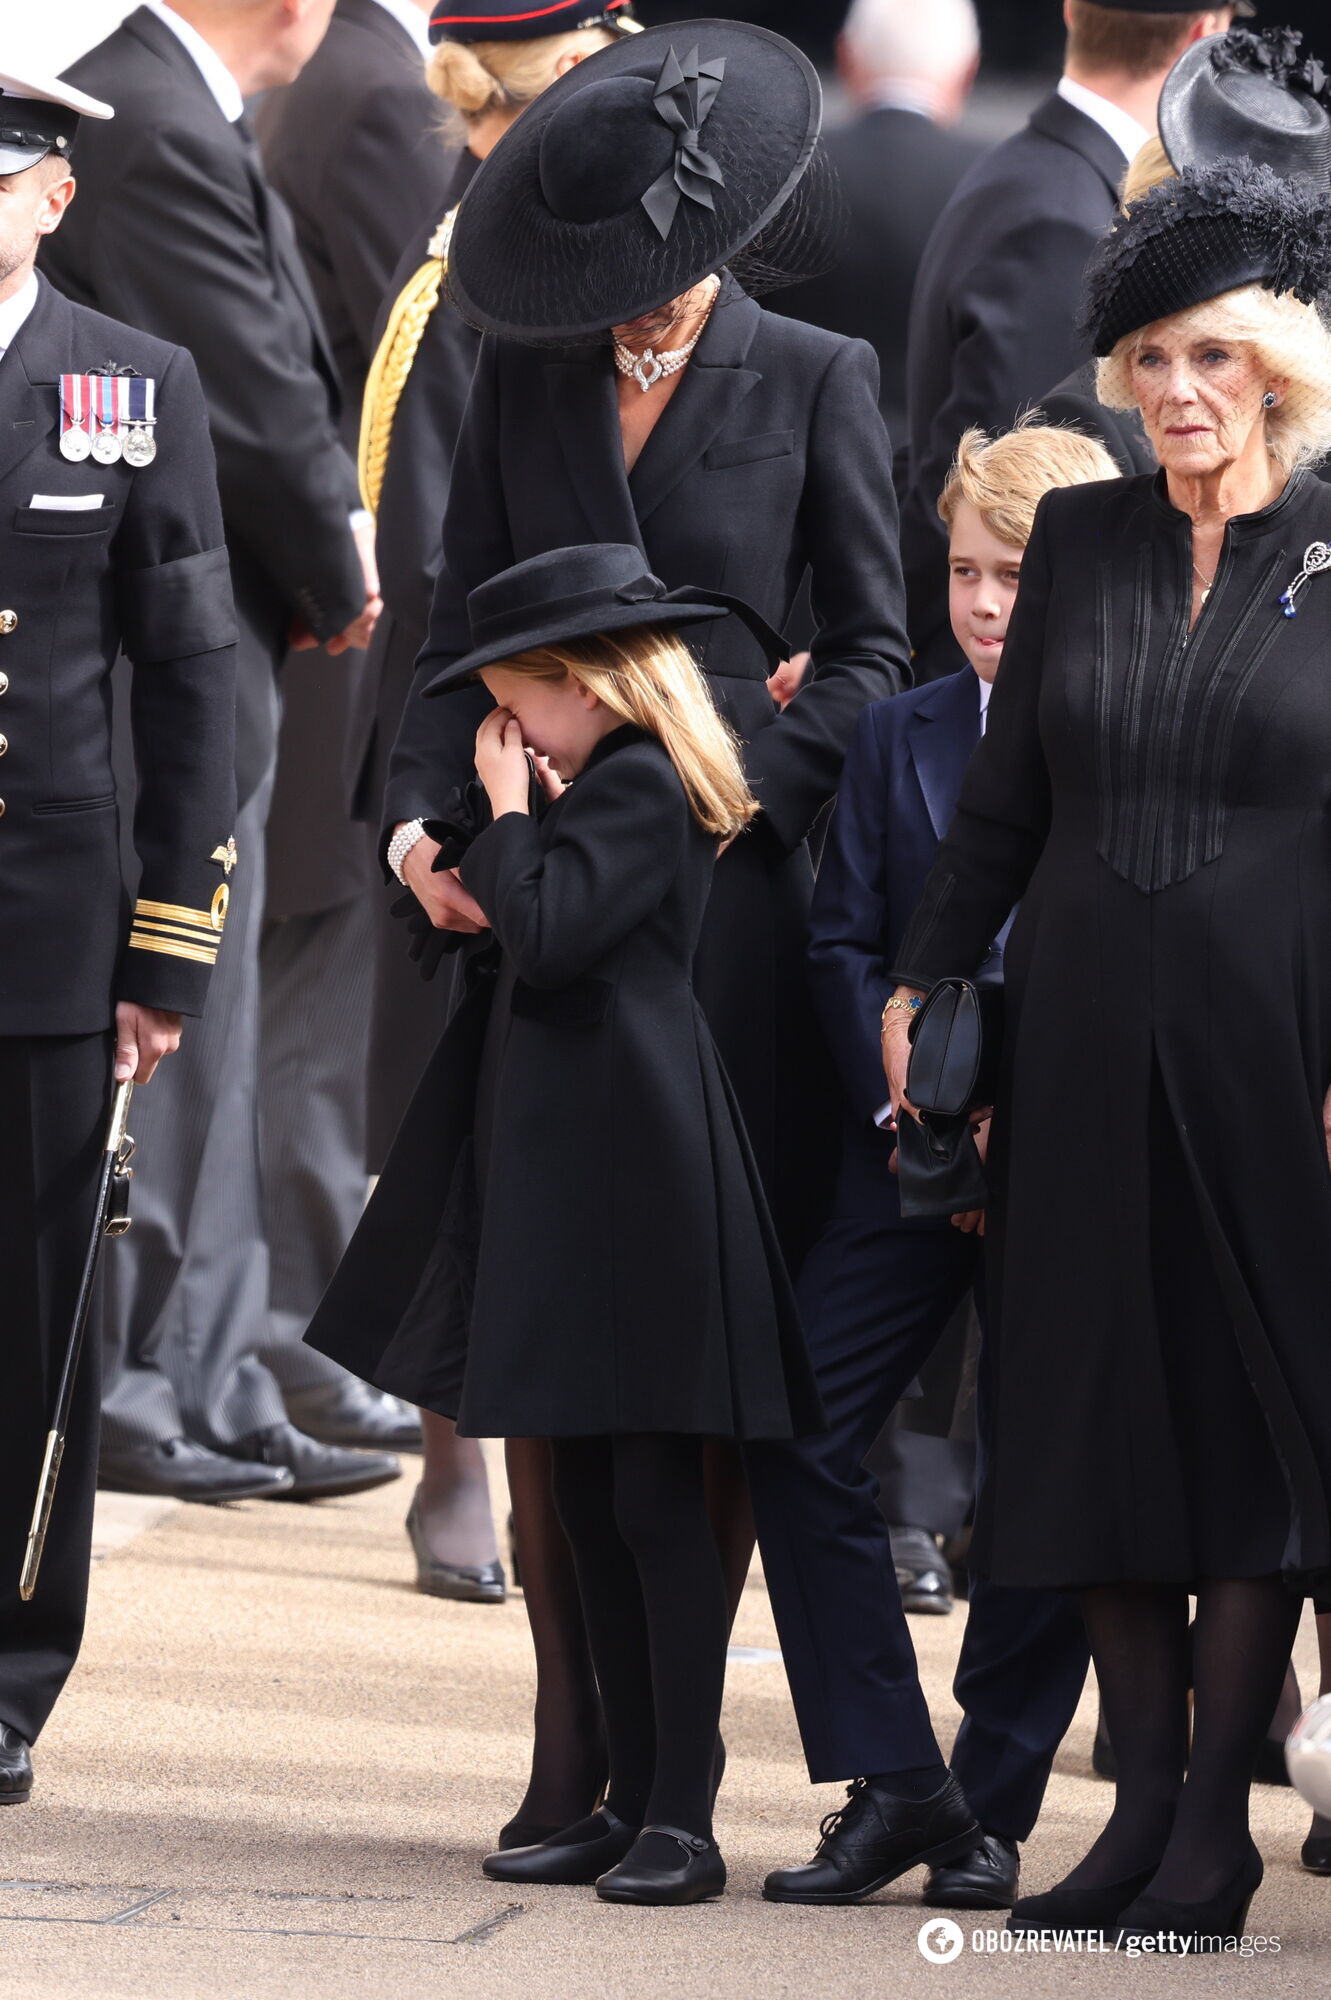 Принцеса Шарлотта розплакалася на похороні прабабусі Єлизавети ІІ: кадри зворушили мережу